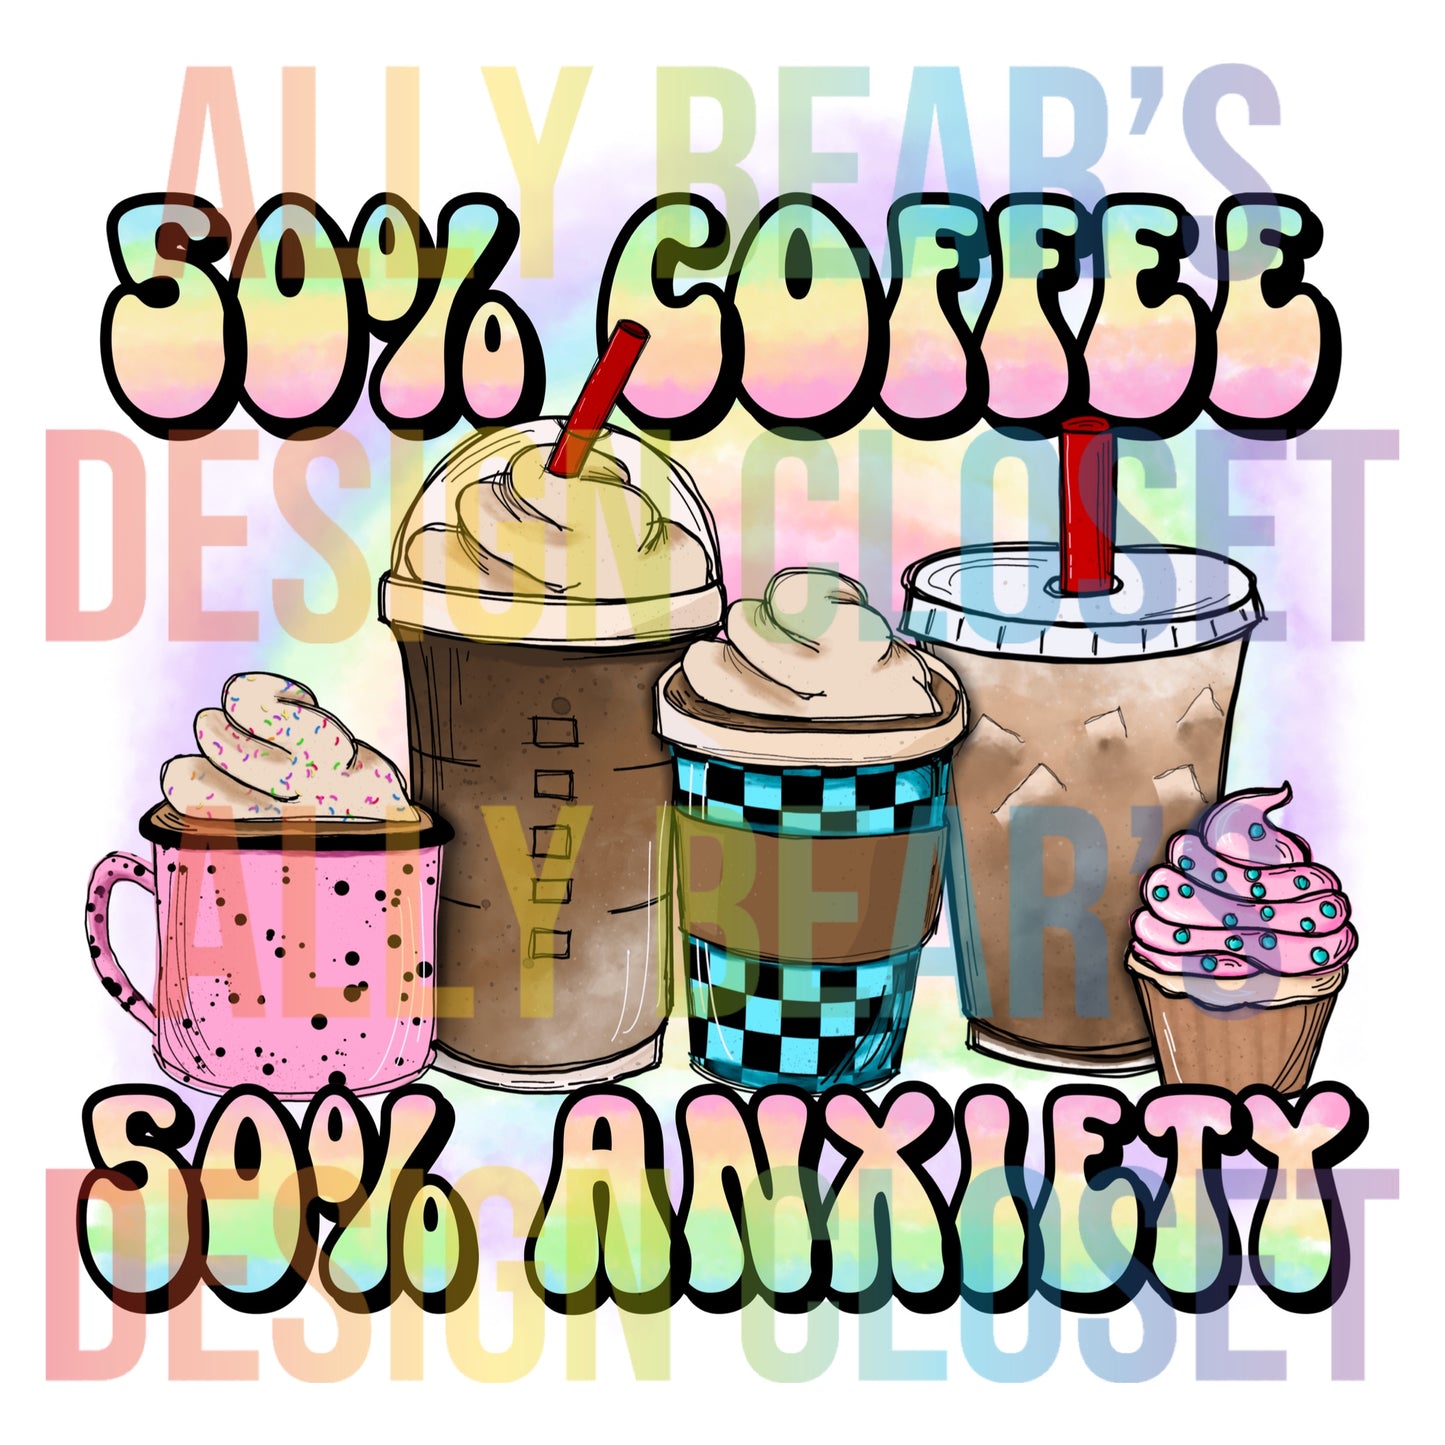 Coffee & Anxiety